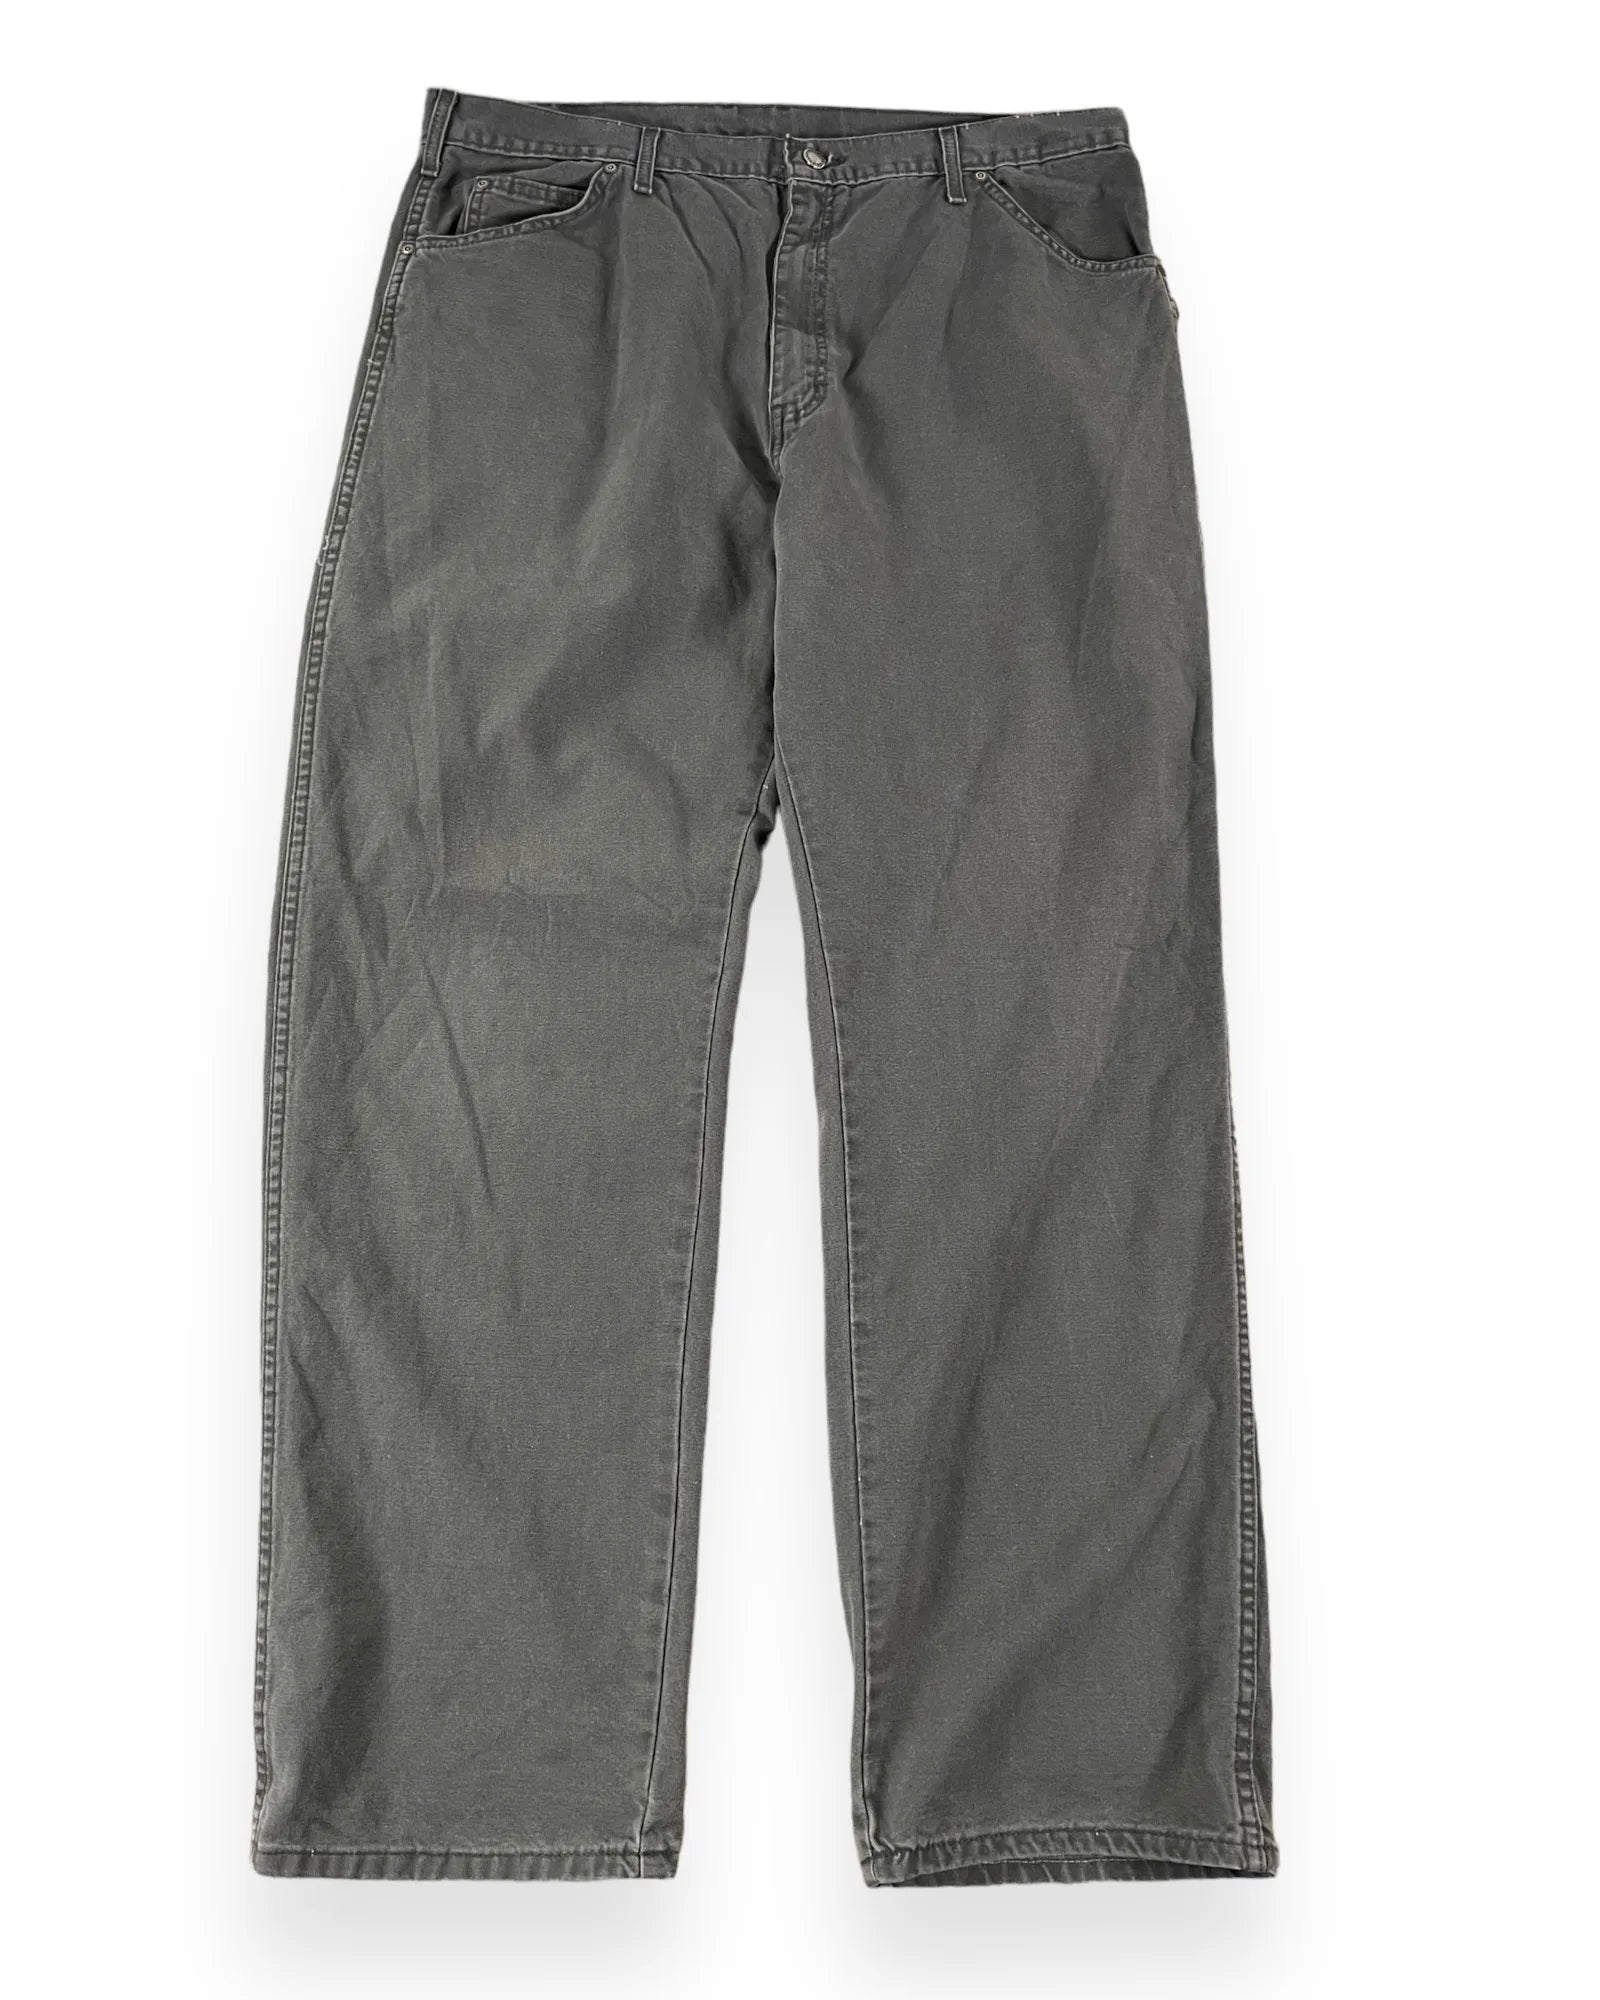 Carhartt Jeans - 40W32L 